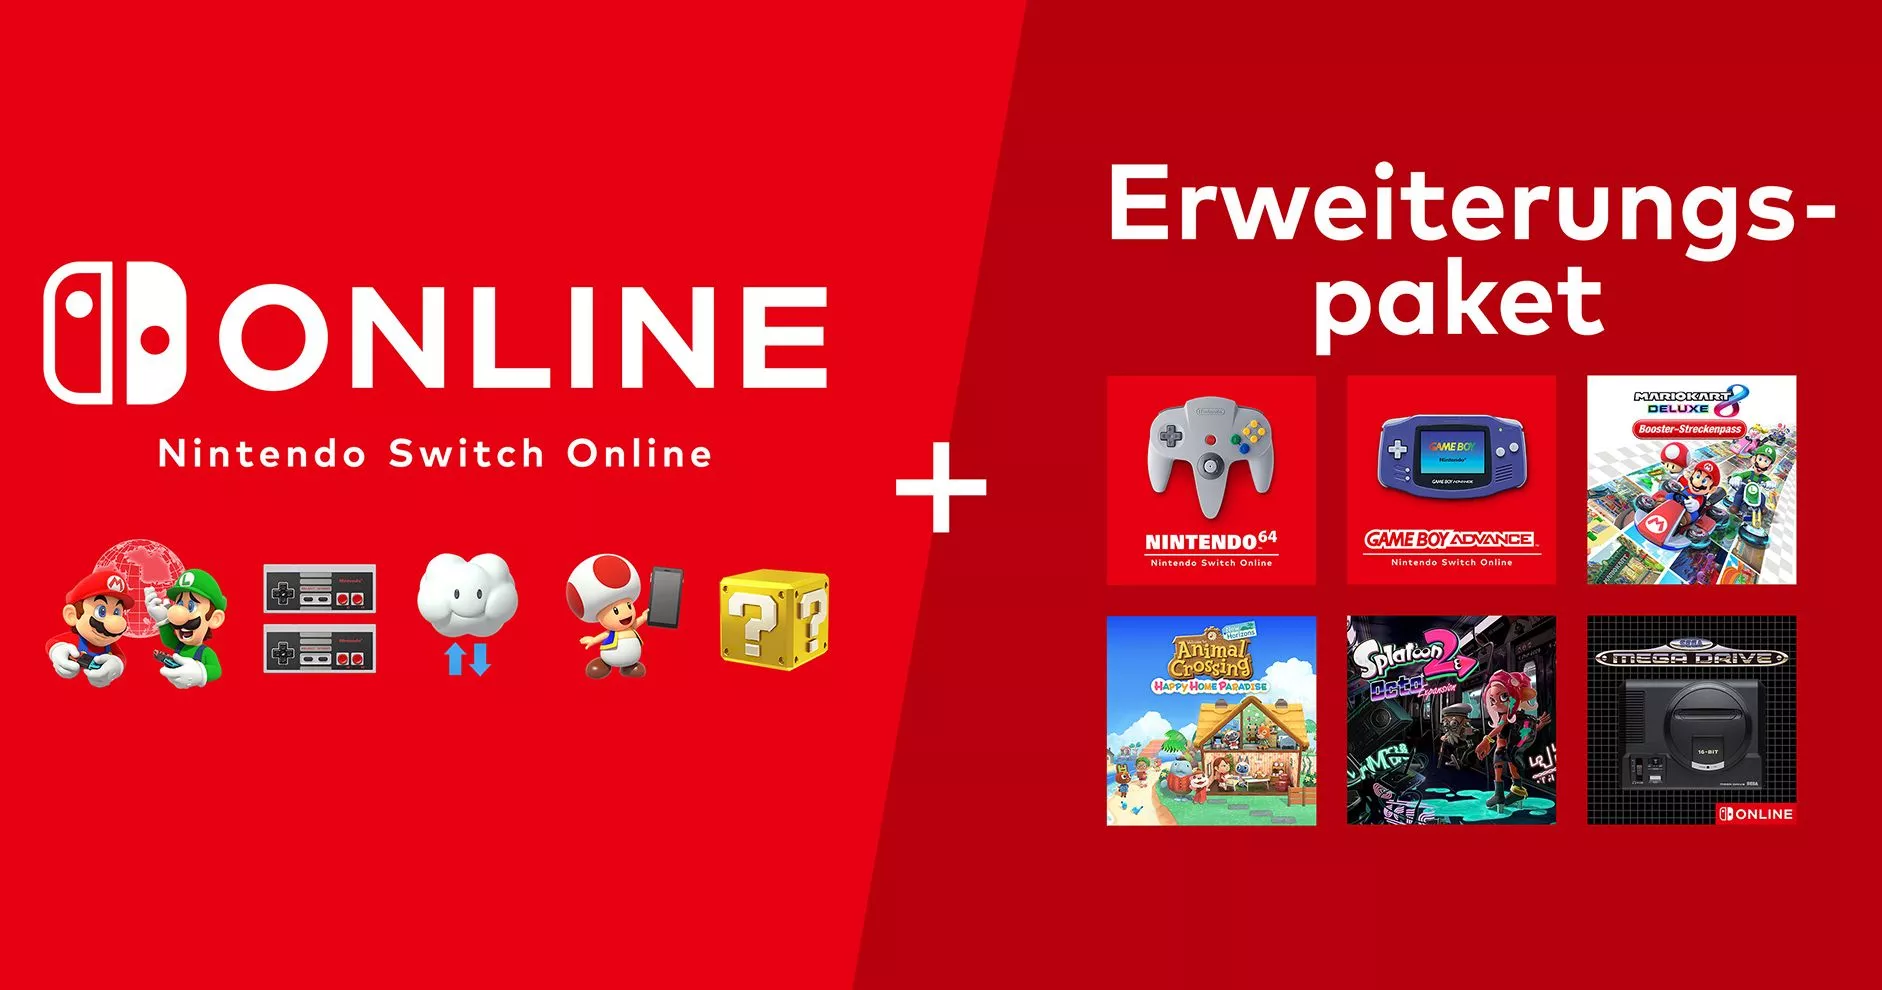 Nintendo Switch Online: Extreme G und Iggy’s Reckin’ Balls kommen hinzu Heropic